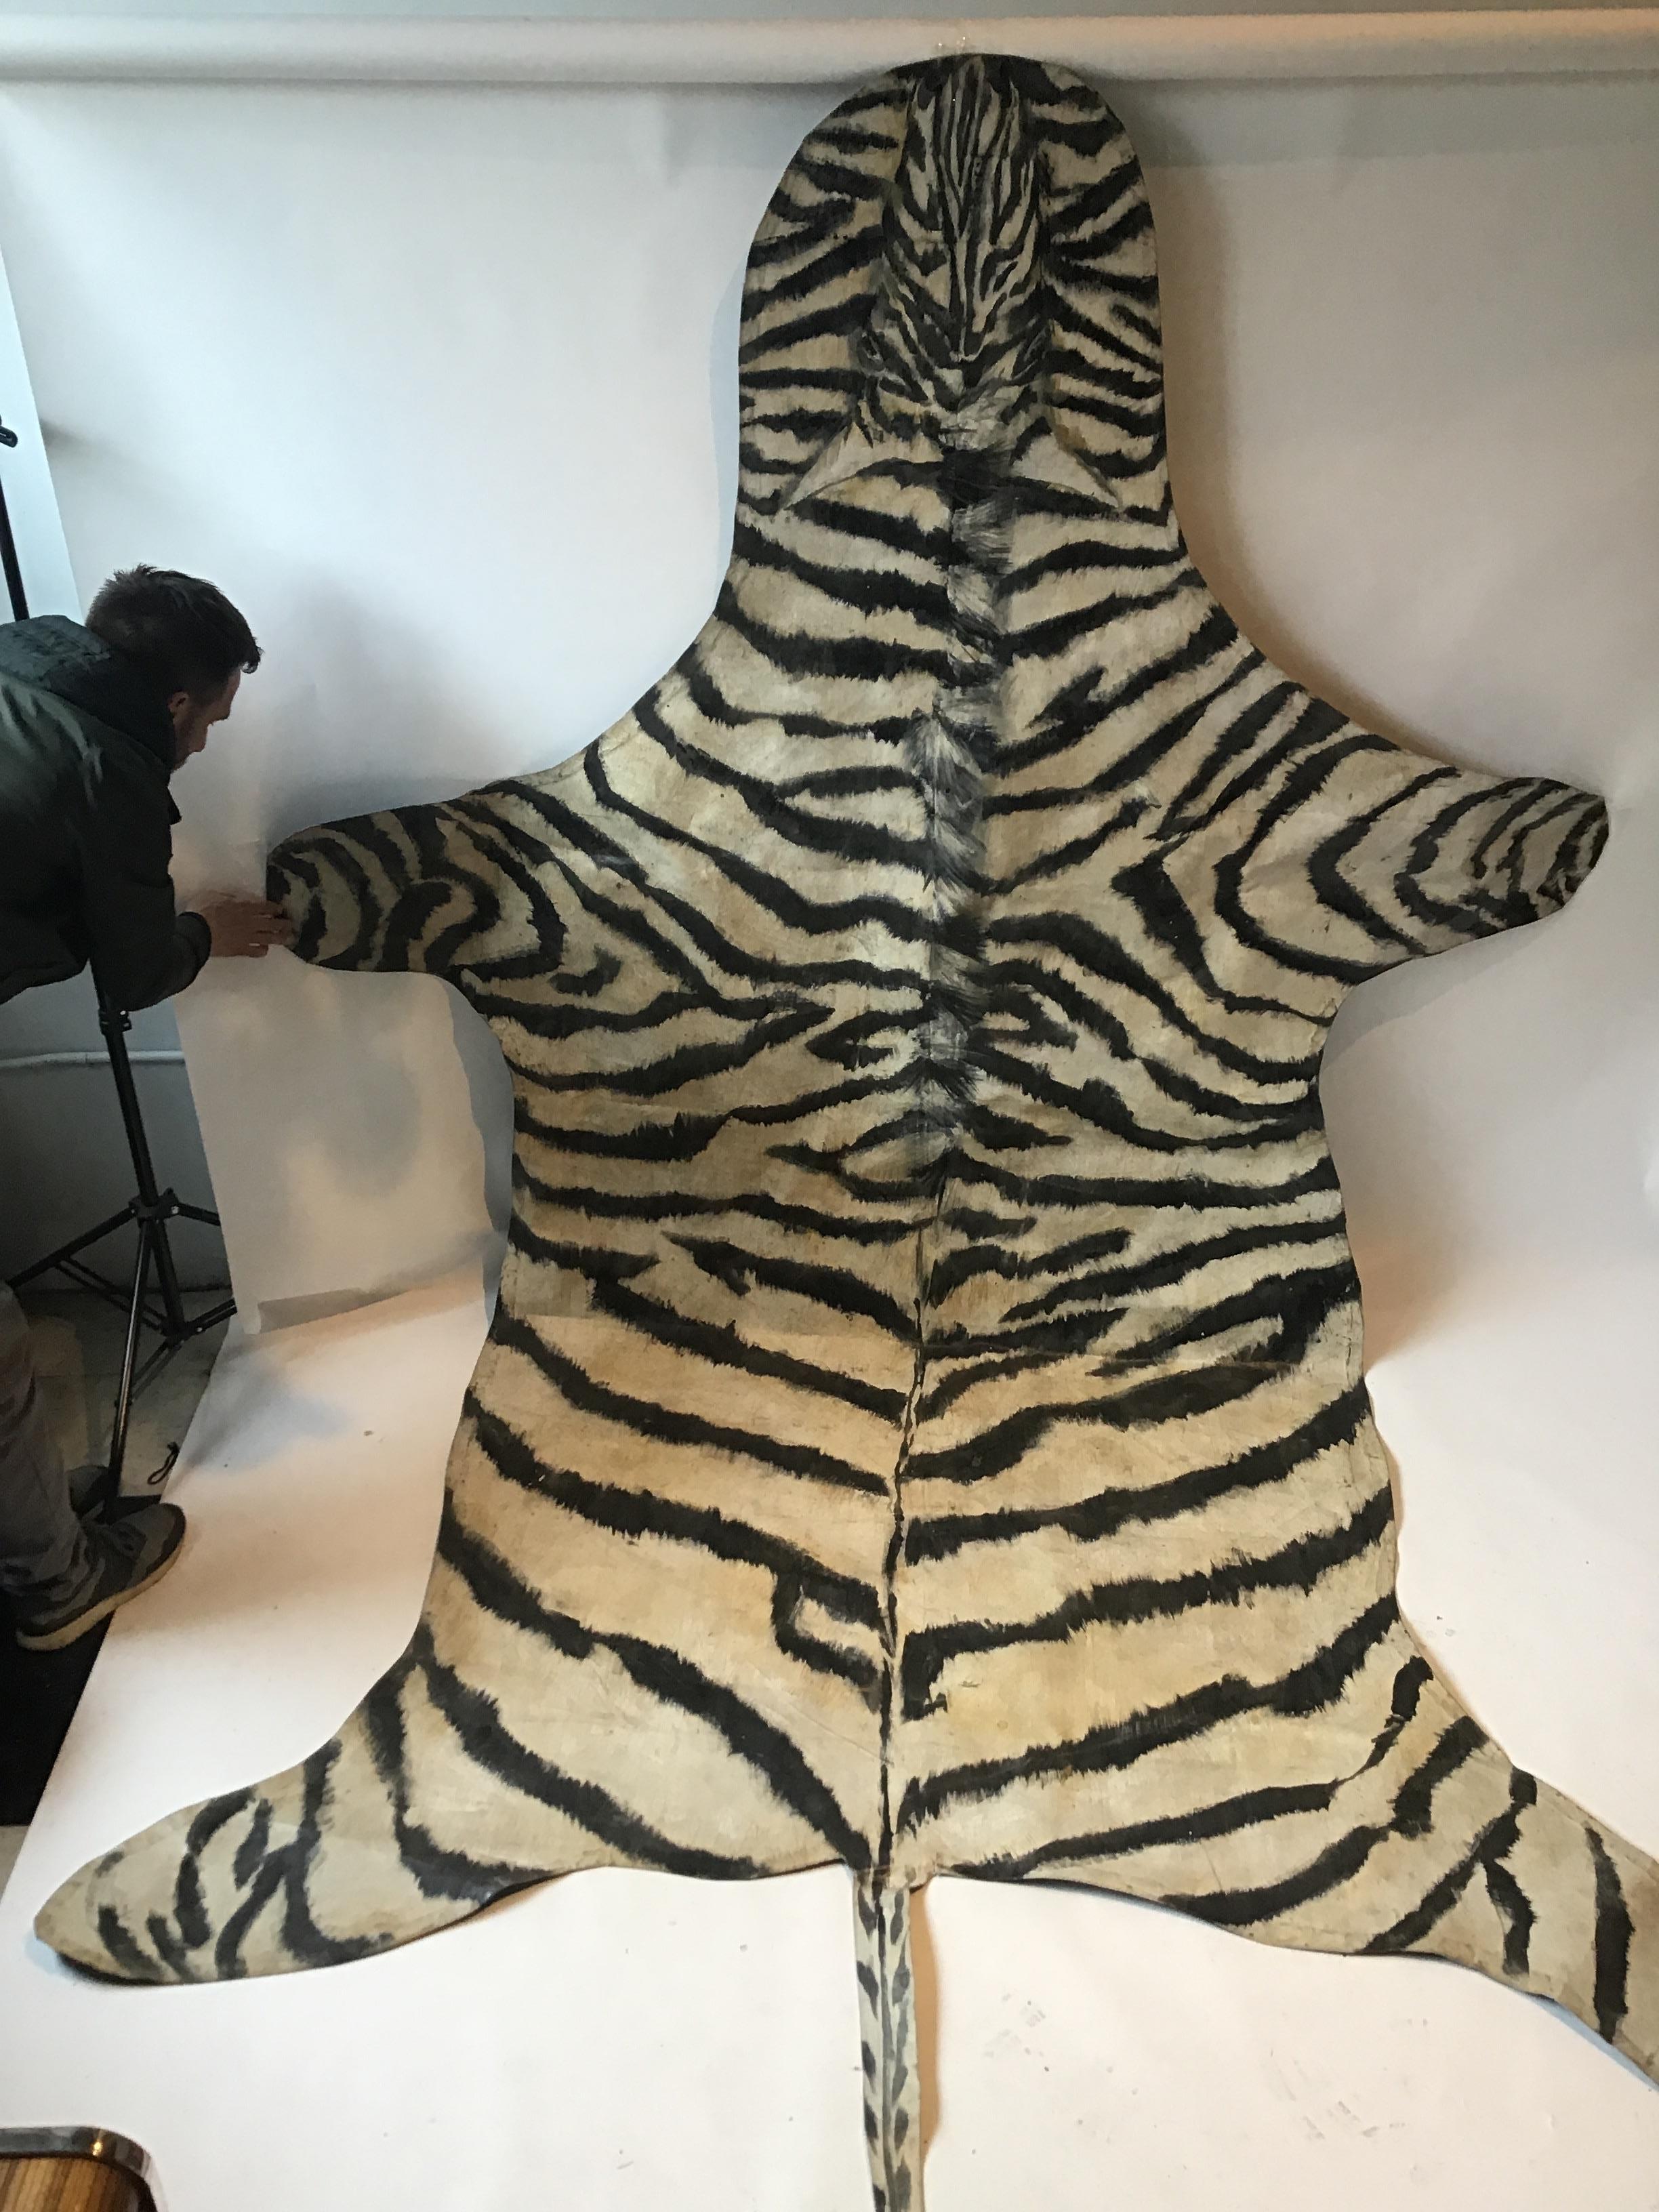 Zebra auf Leinwand handgemalt von einem NYC-Künstler. Groß.